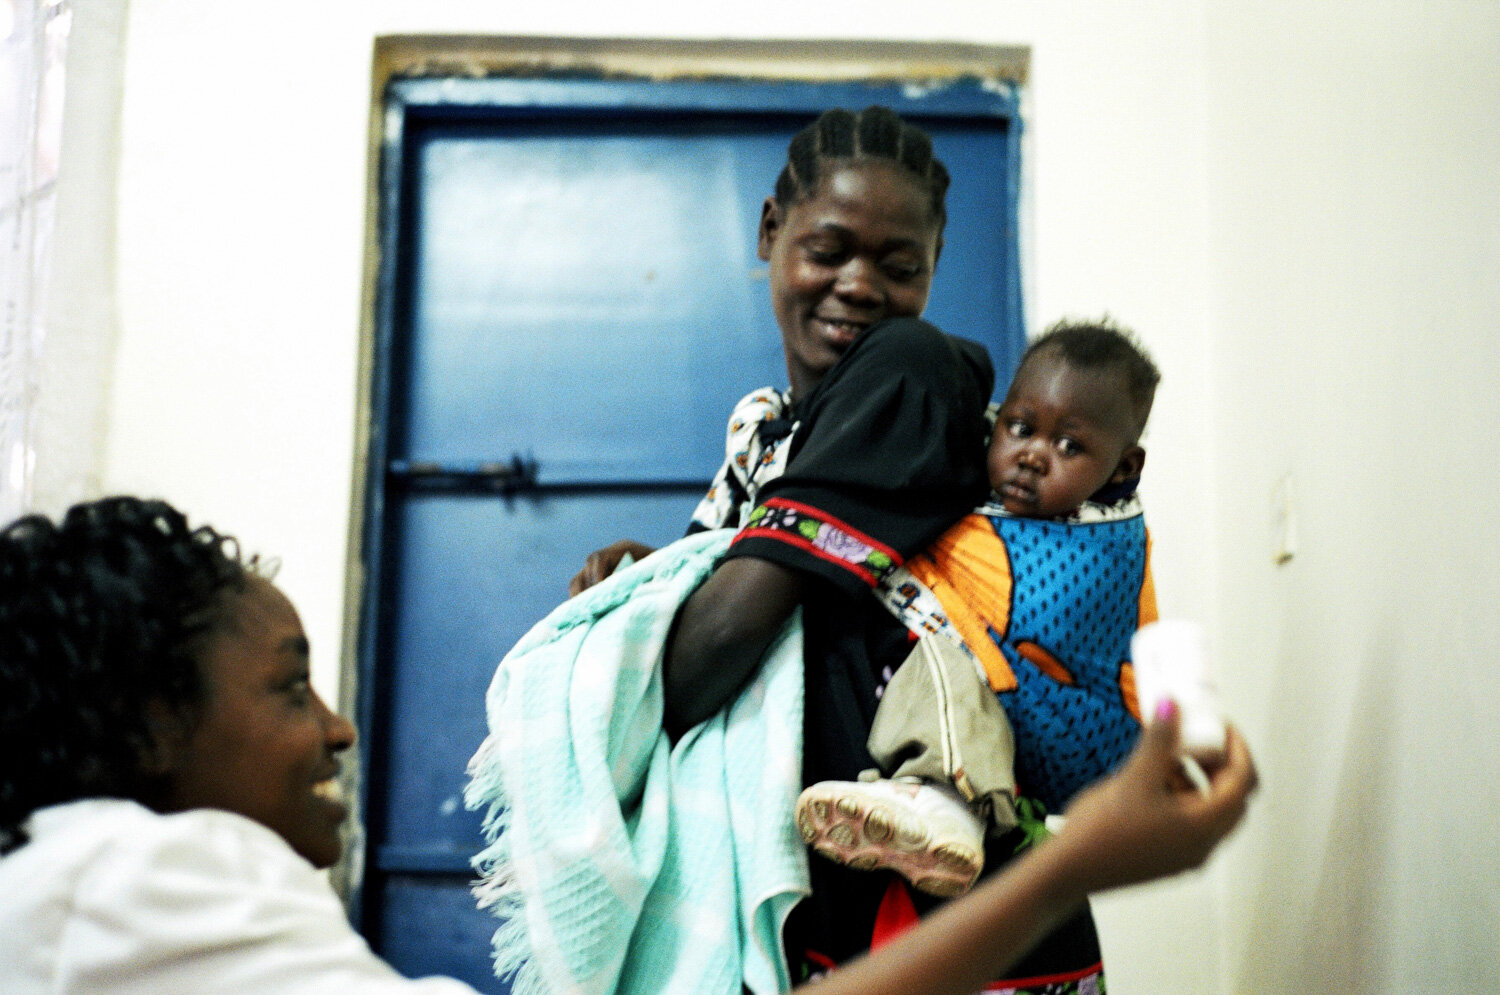  Une femme et son enfant se font délivrer par une infirmière les médicaments ARV, dans la clinique SIDA du bidonville de Matharé. Avec Médecins Sans Frontières, dans la lutte pour l'accès aux médicaments essentiels. Nairobi, Kenya. Mars 2005 // A wom